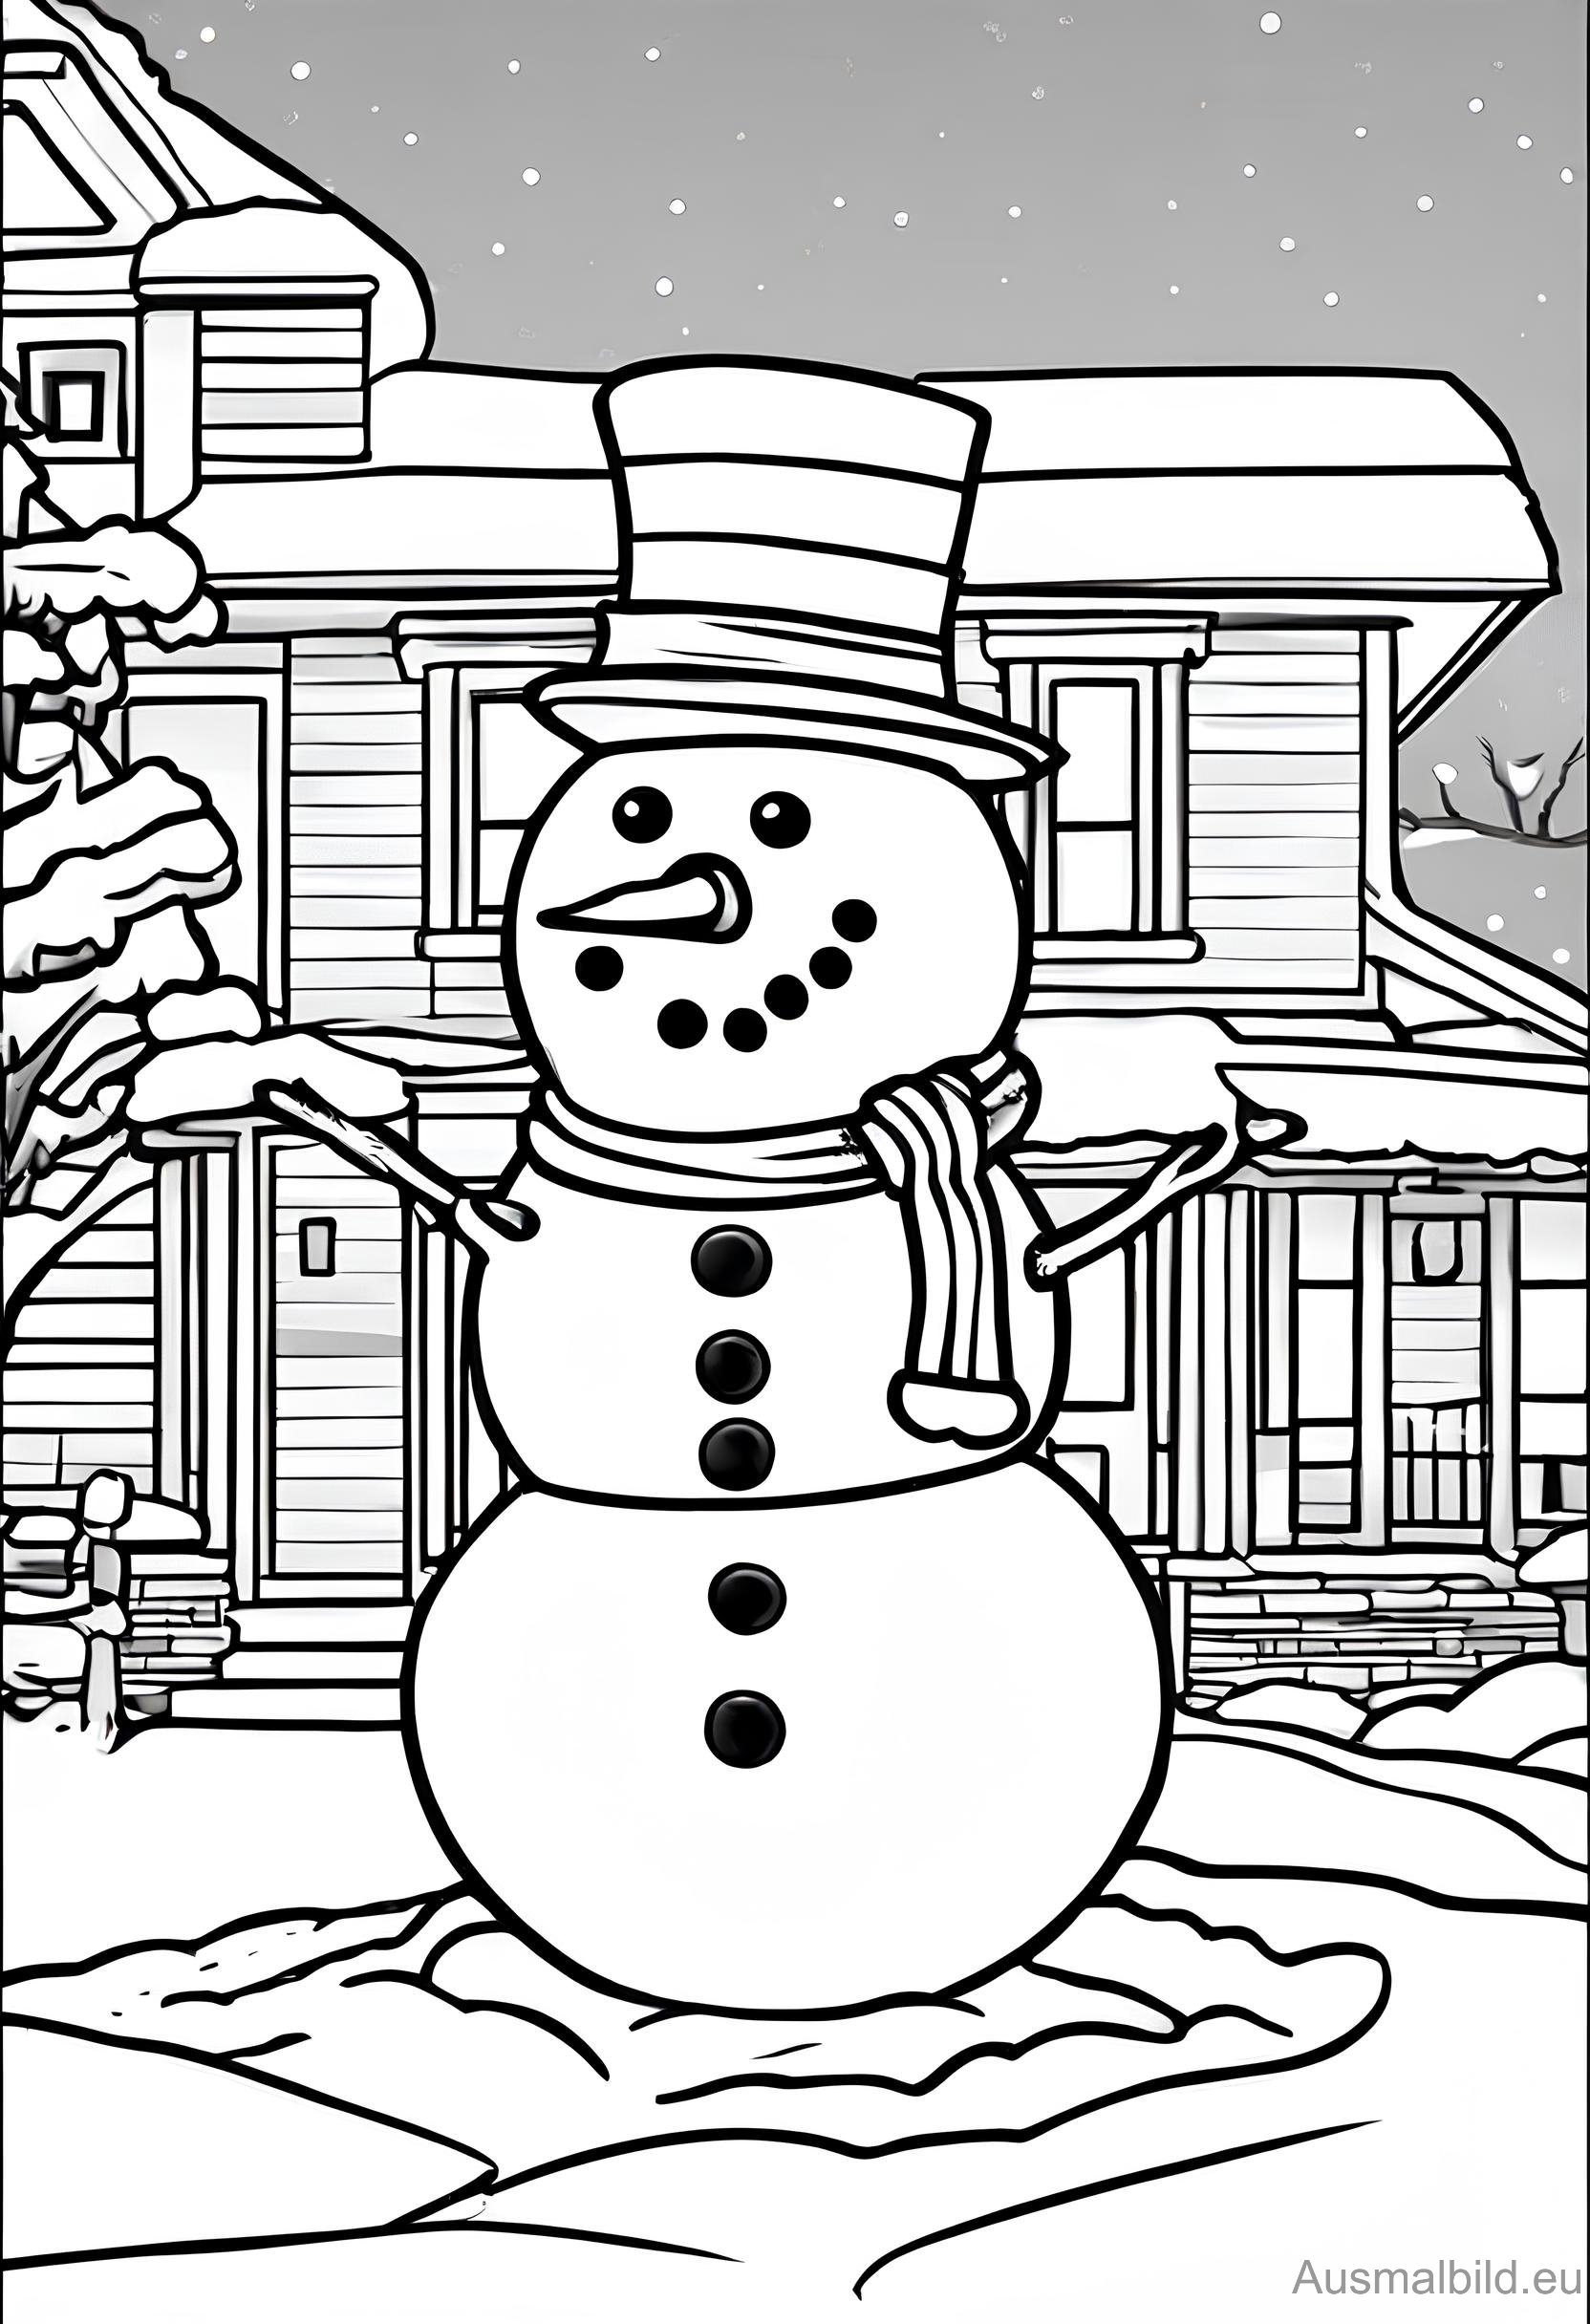 Ausmalbild: Schneemann vor dem Haus